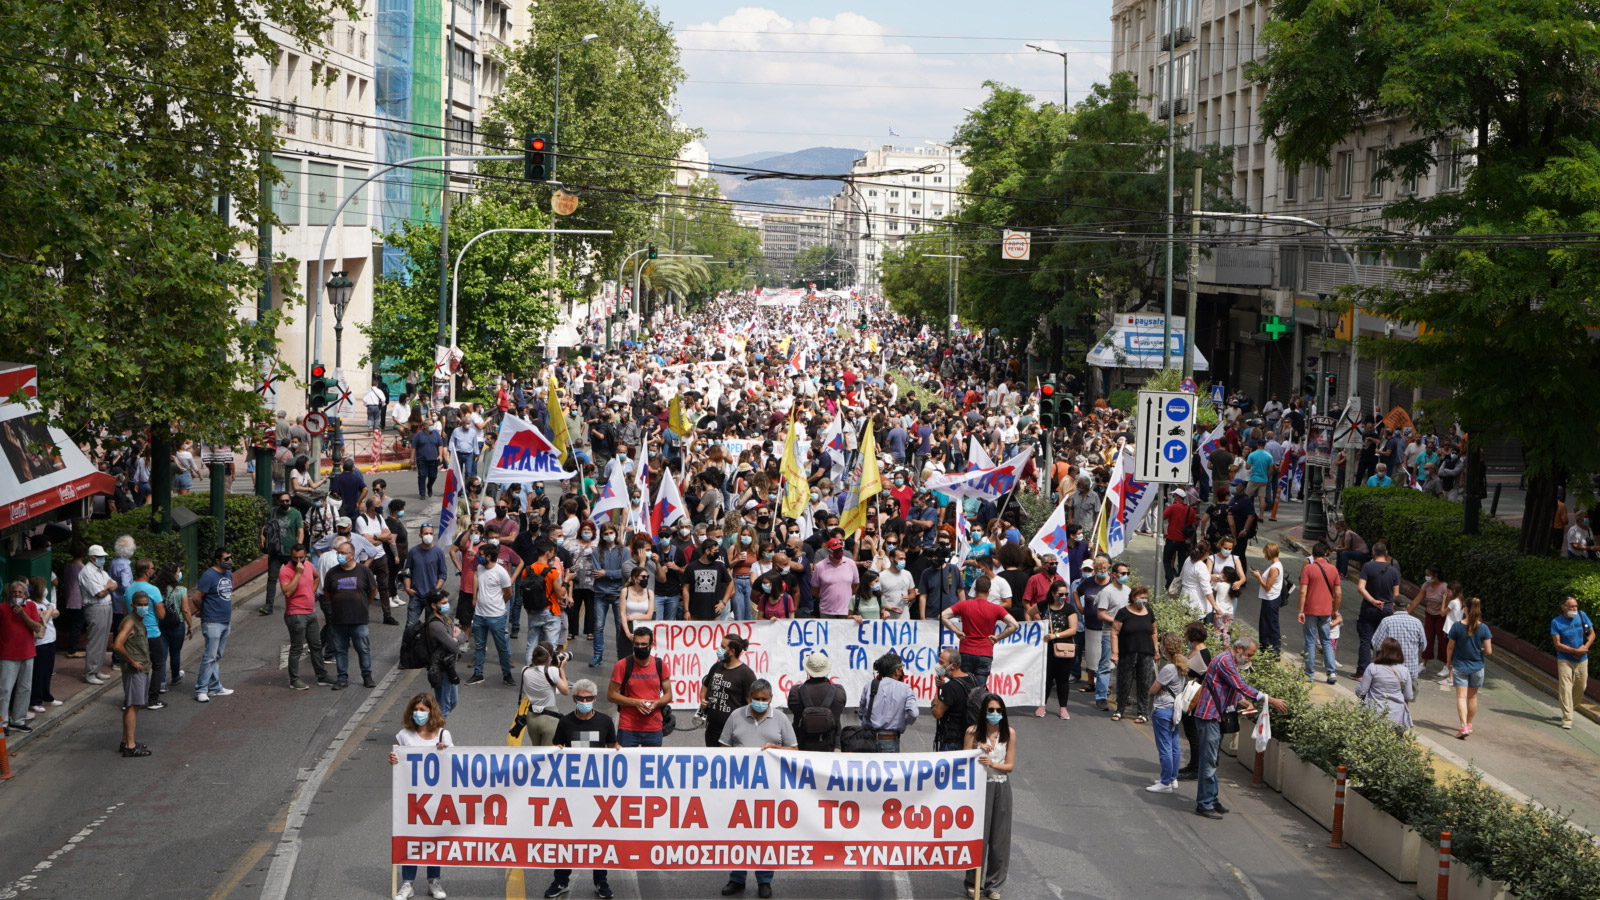 poreia athina 07 - Solidarität mit den Streikenden in Griechenland! - Griechenland, Jugend, Kommunistische Parteien - Blog, Weltkommunismus